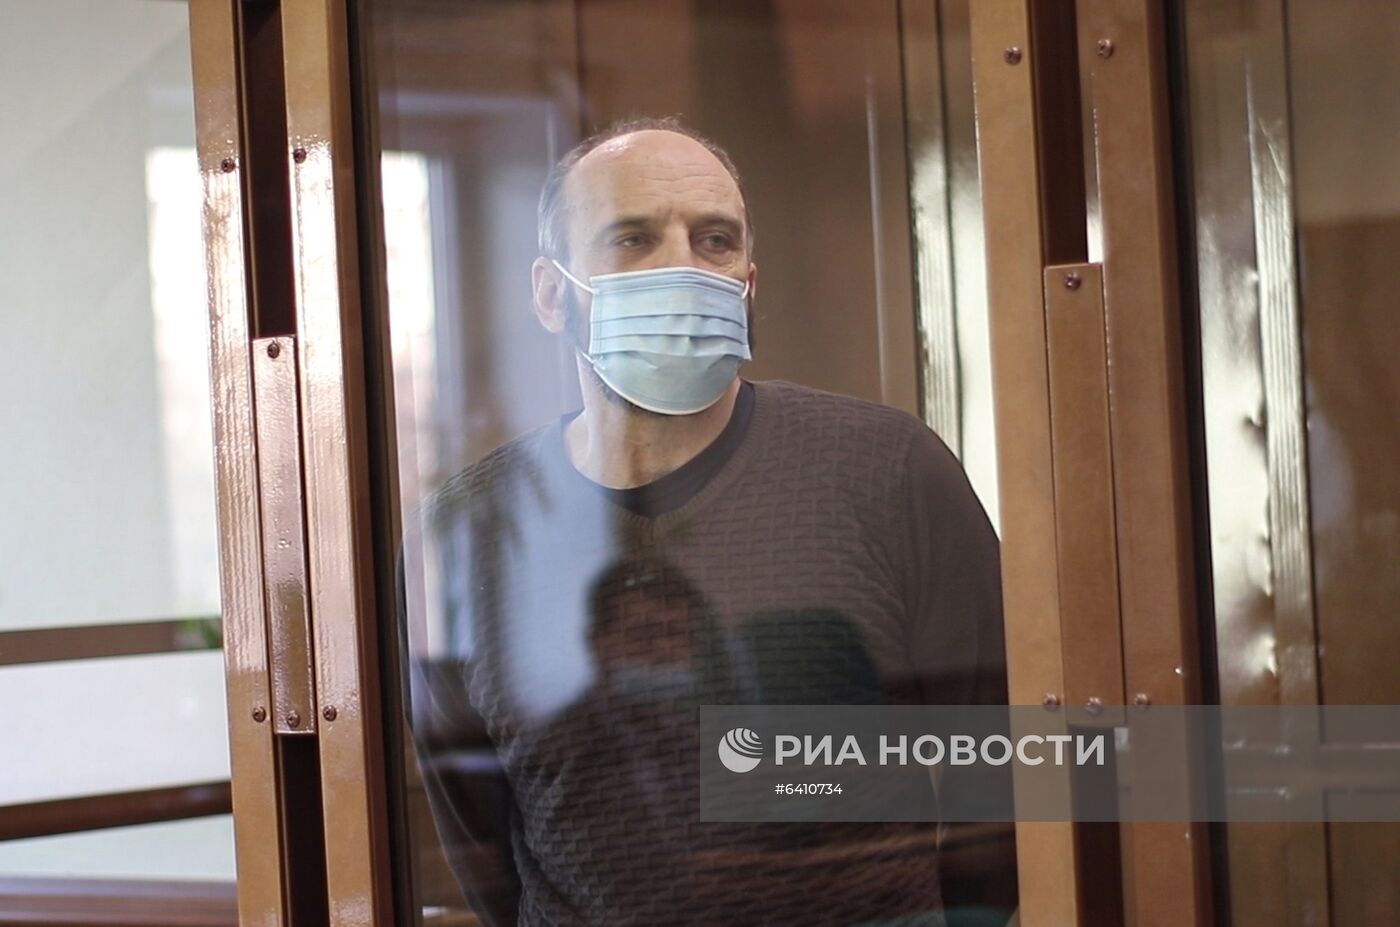 Оглашение приговора бывшему украинскому футболисту В. Василенко, обвиняемого в шпионаже в пользу Украины